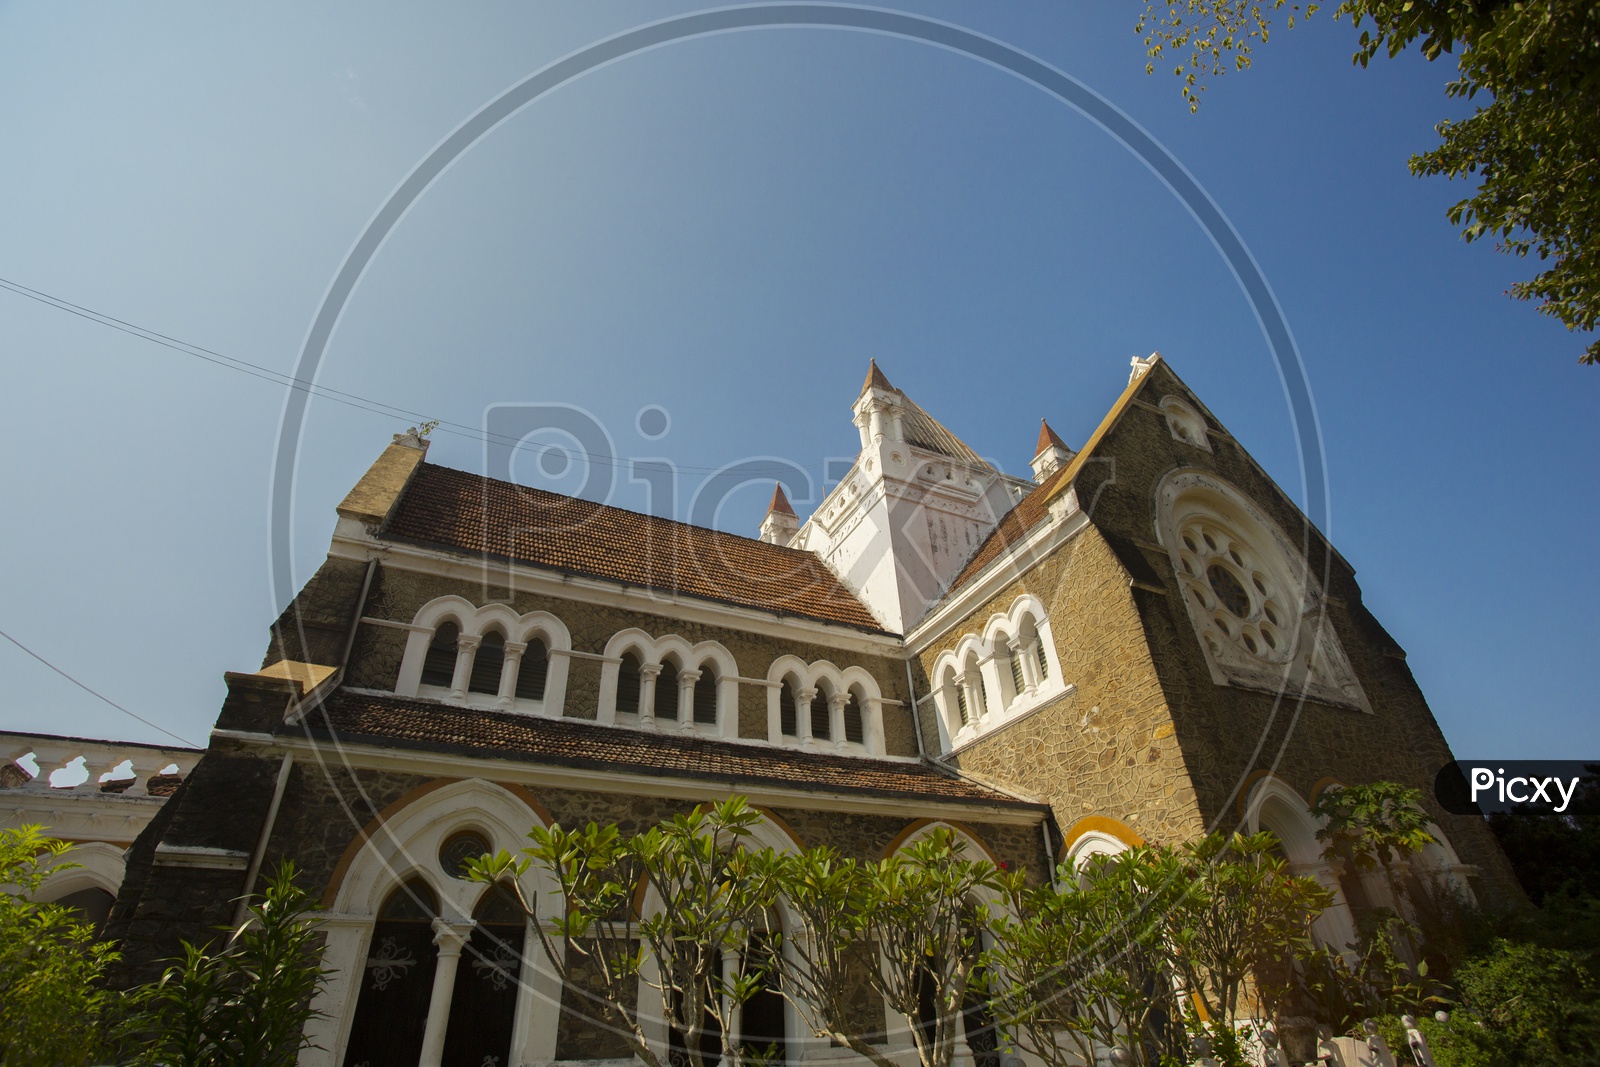 Churches in Sri lanka / Sri Lankan Churches / Local Churches in Sri Lanka